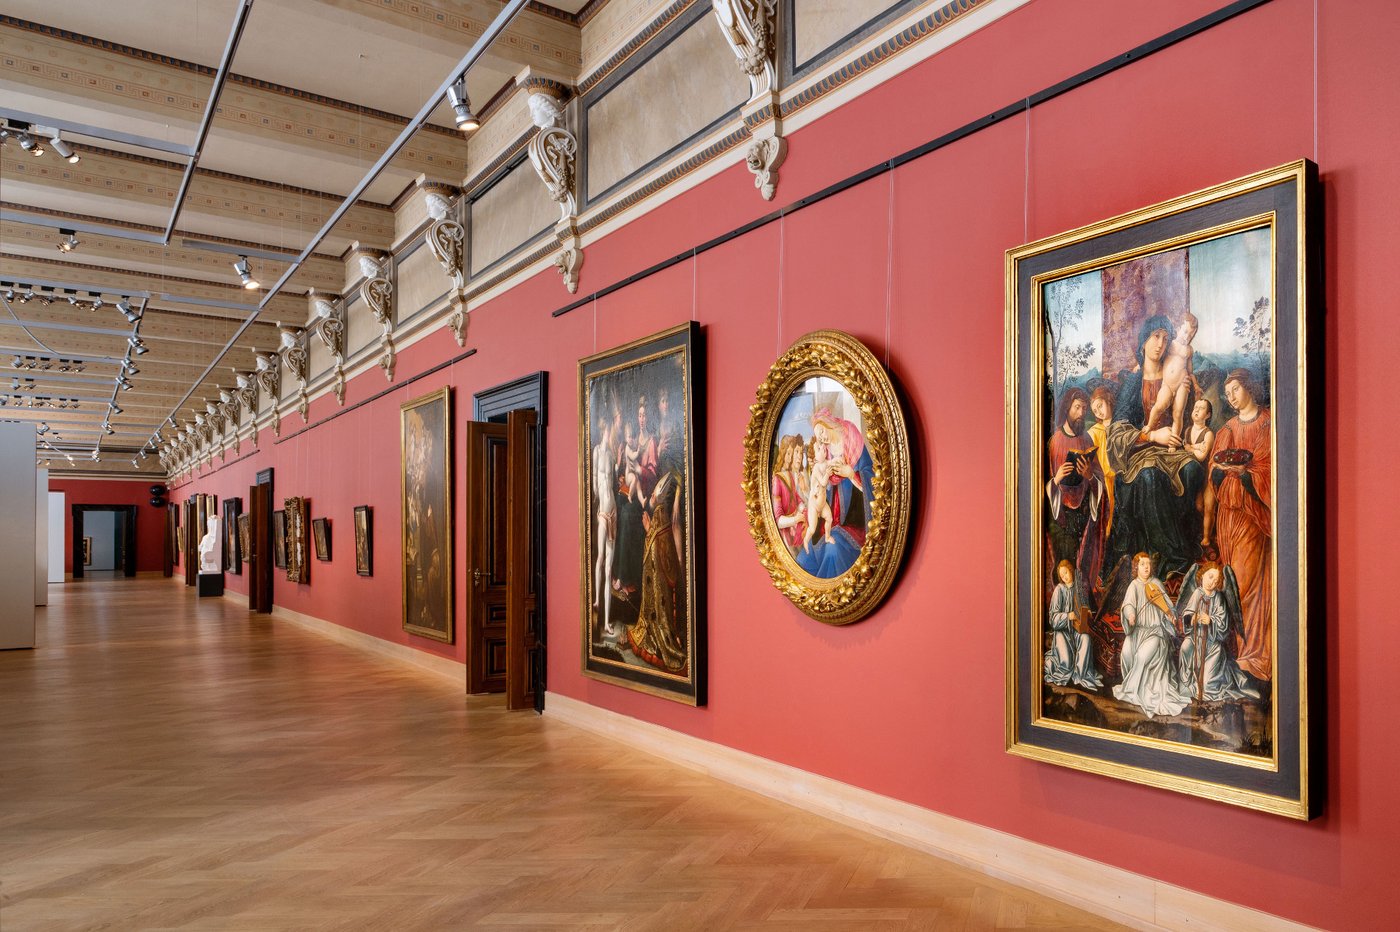 Mehrere gerahmte Gemälde in einem langen rot ausgemalten Ausstellungsraum